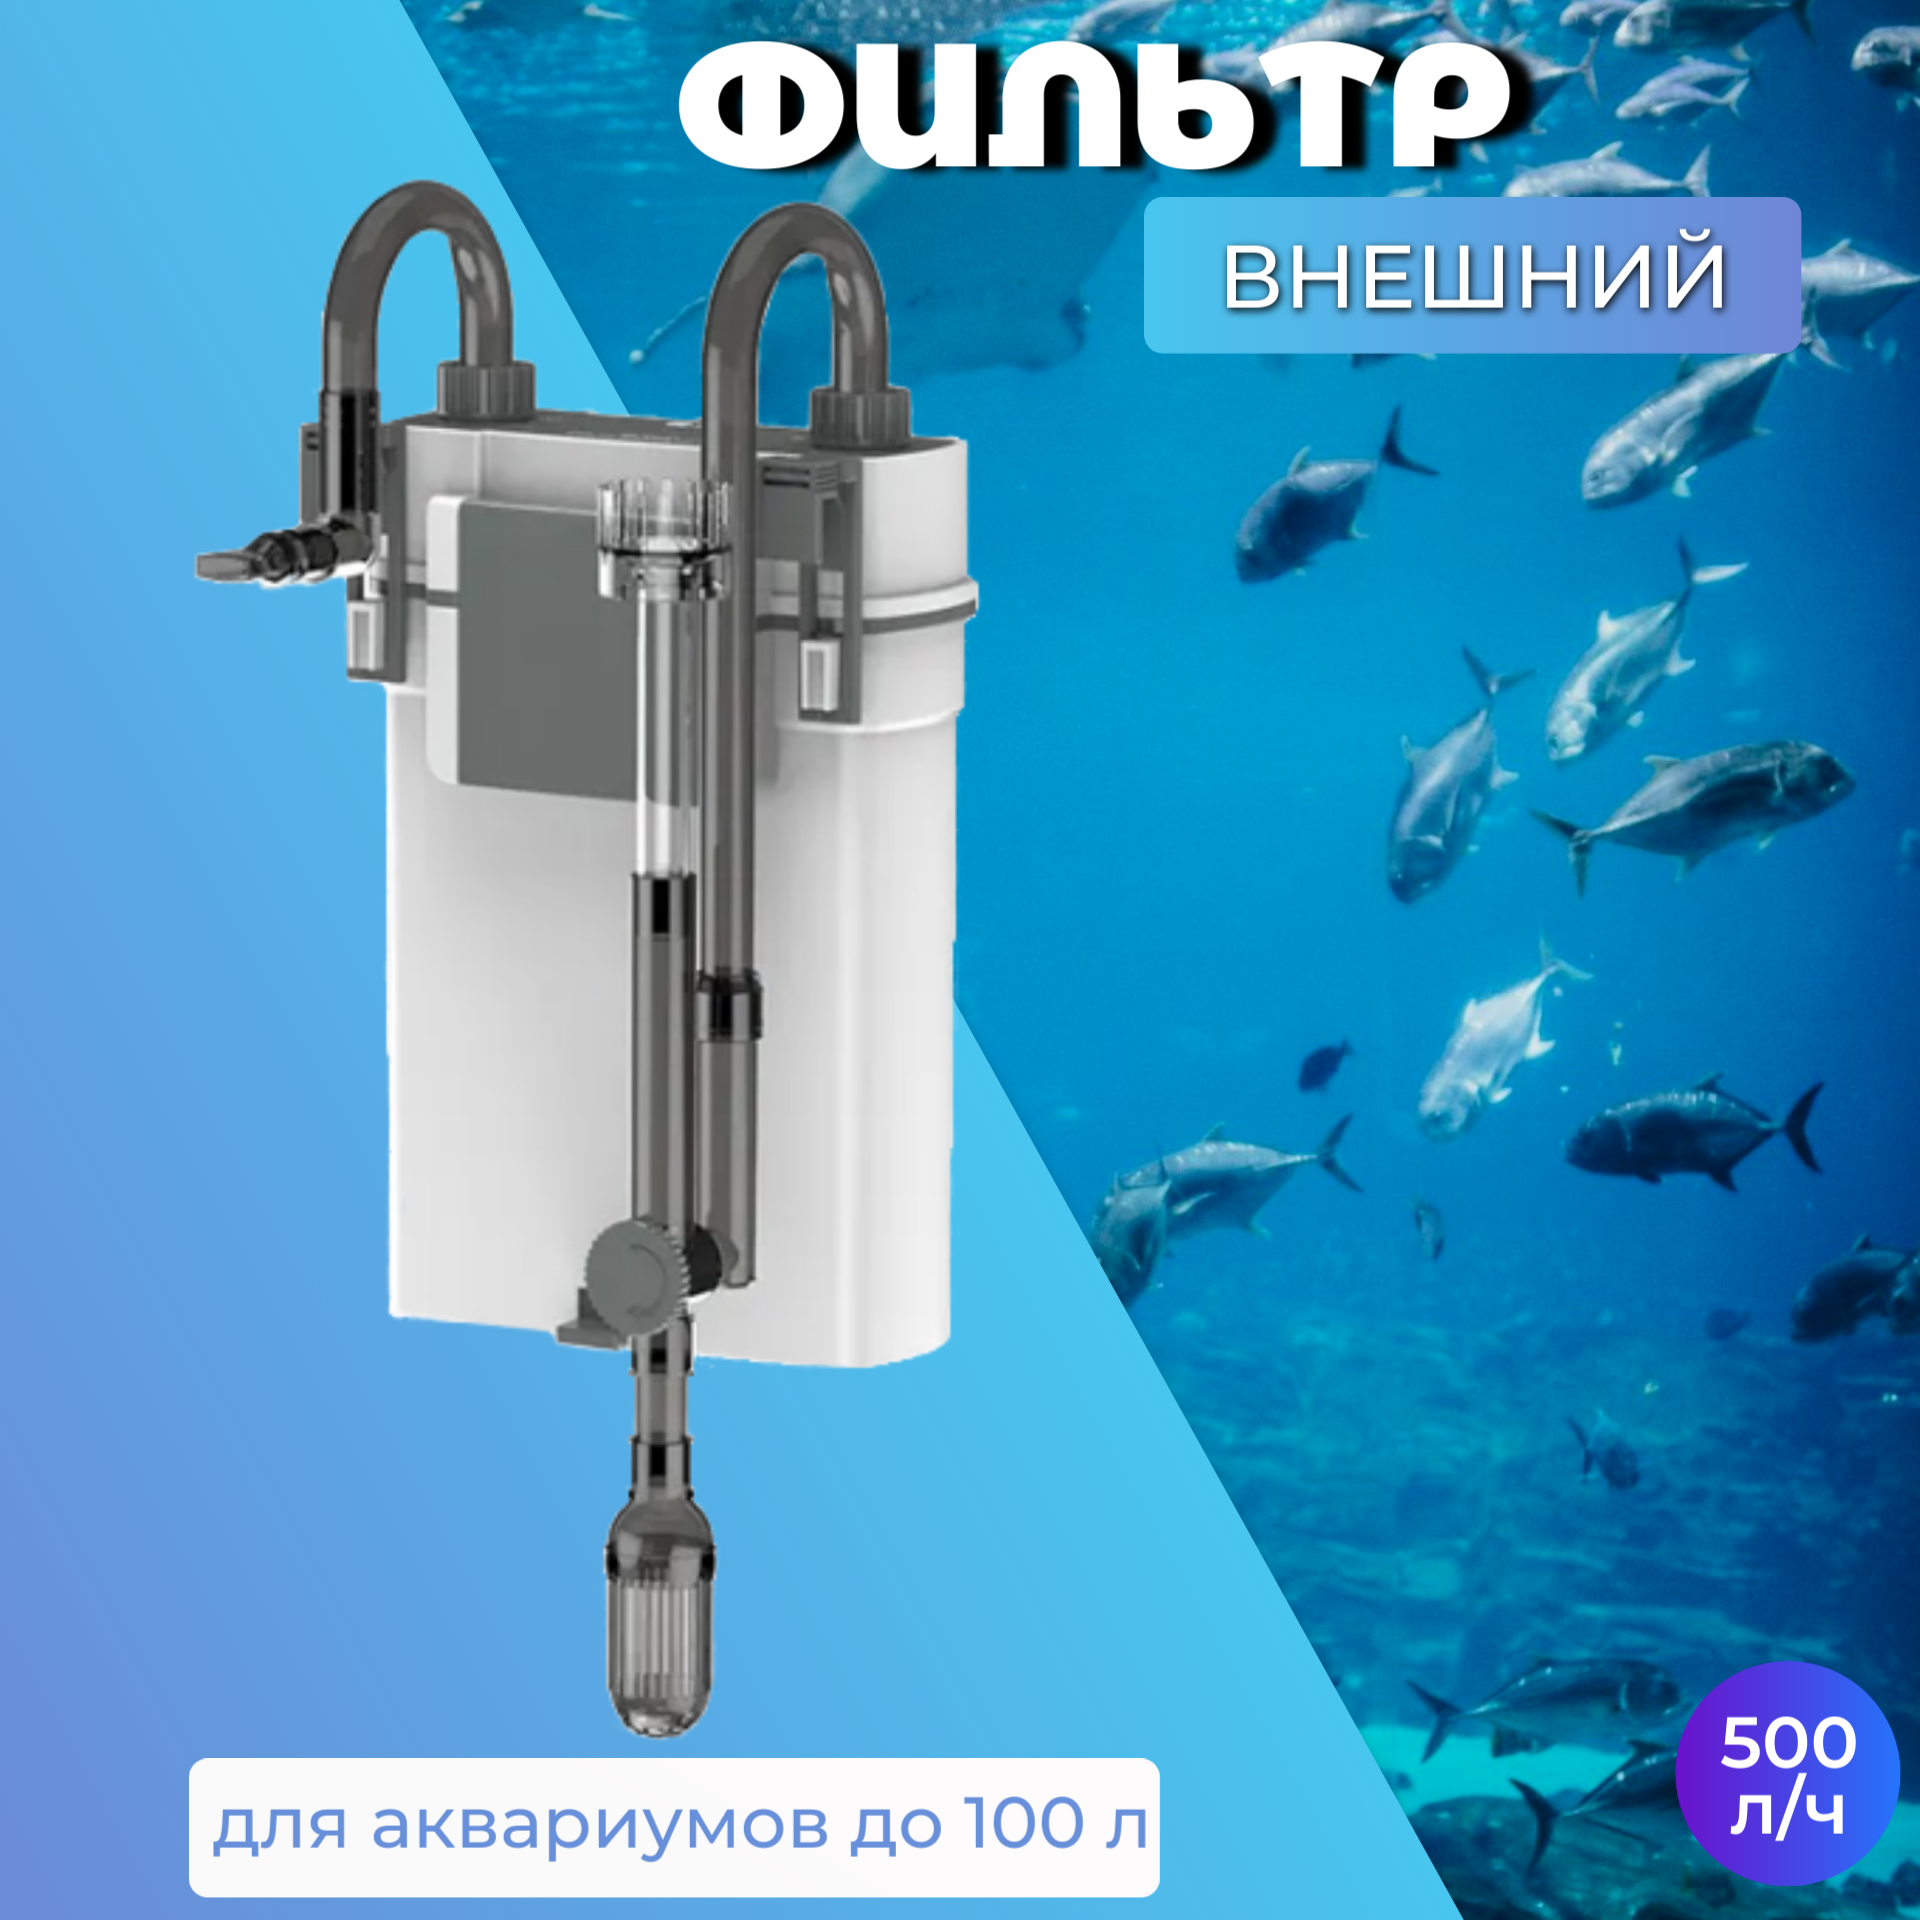 Фильтр для аквариума внешний 500 л. ч 7 Вт / Навесной аквариумный фильтр XBL-500